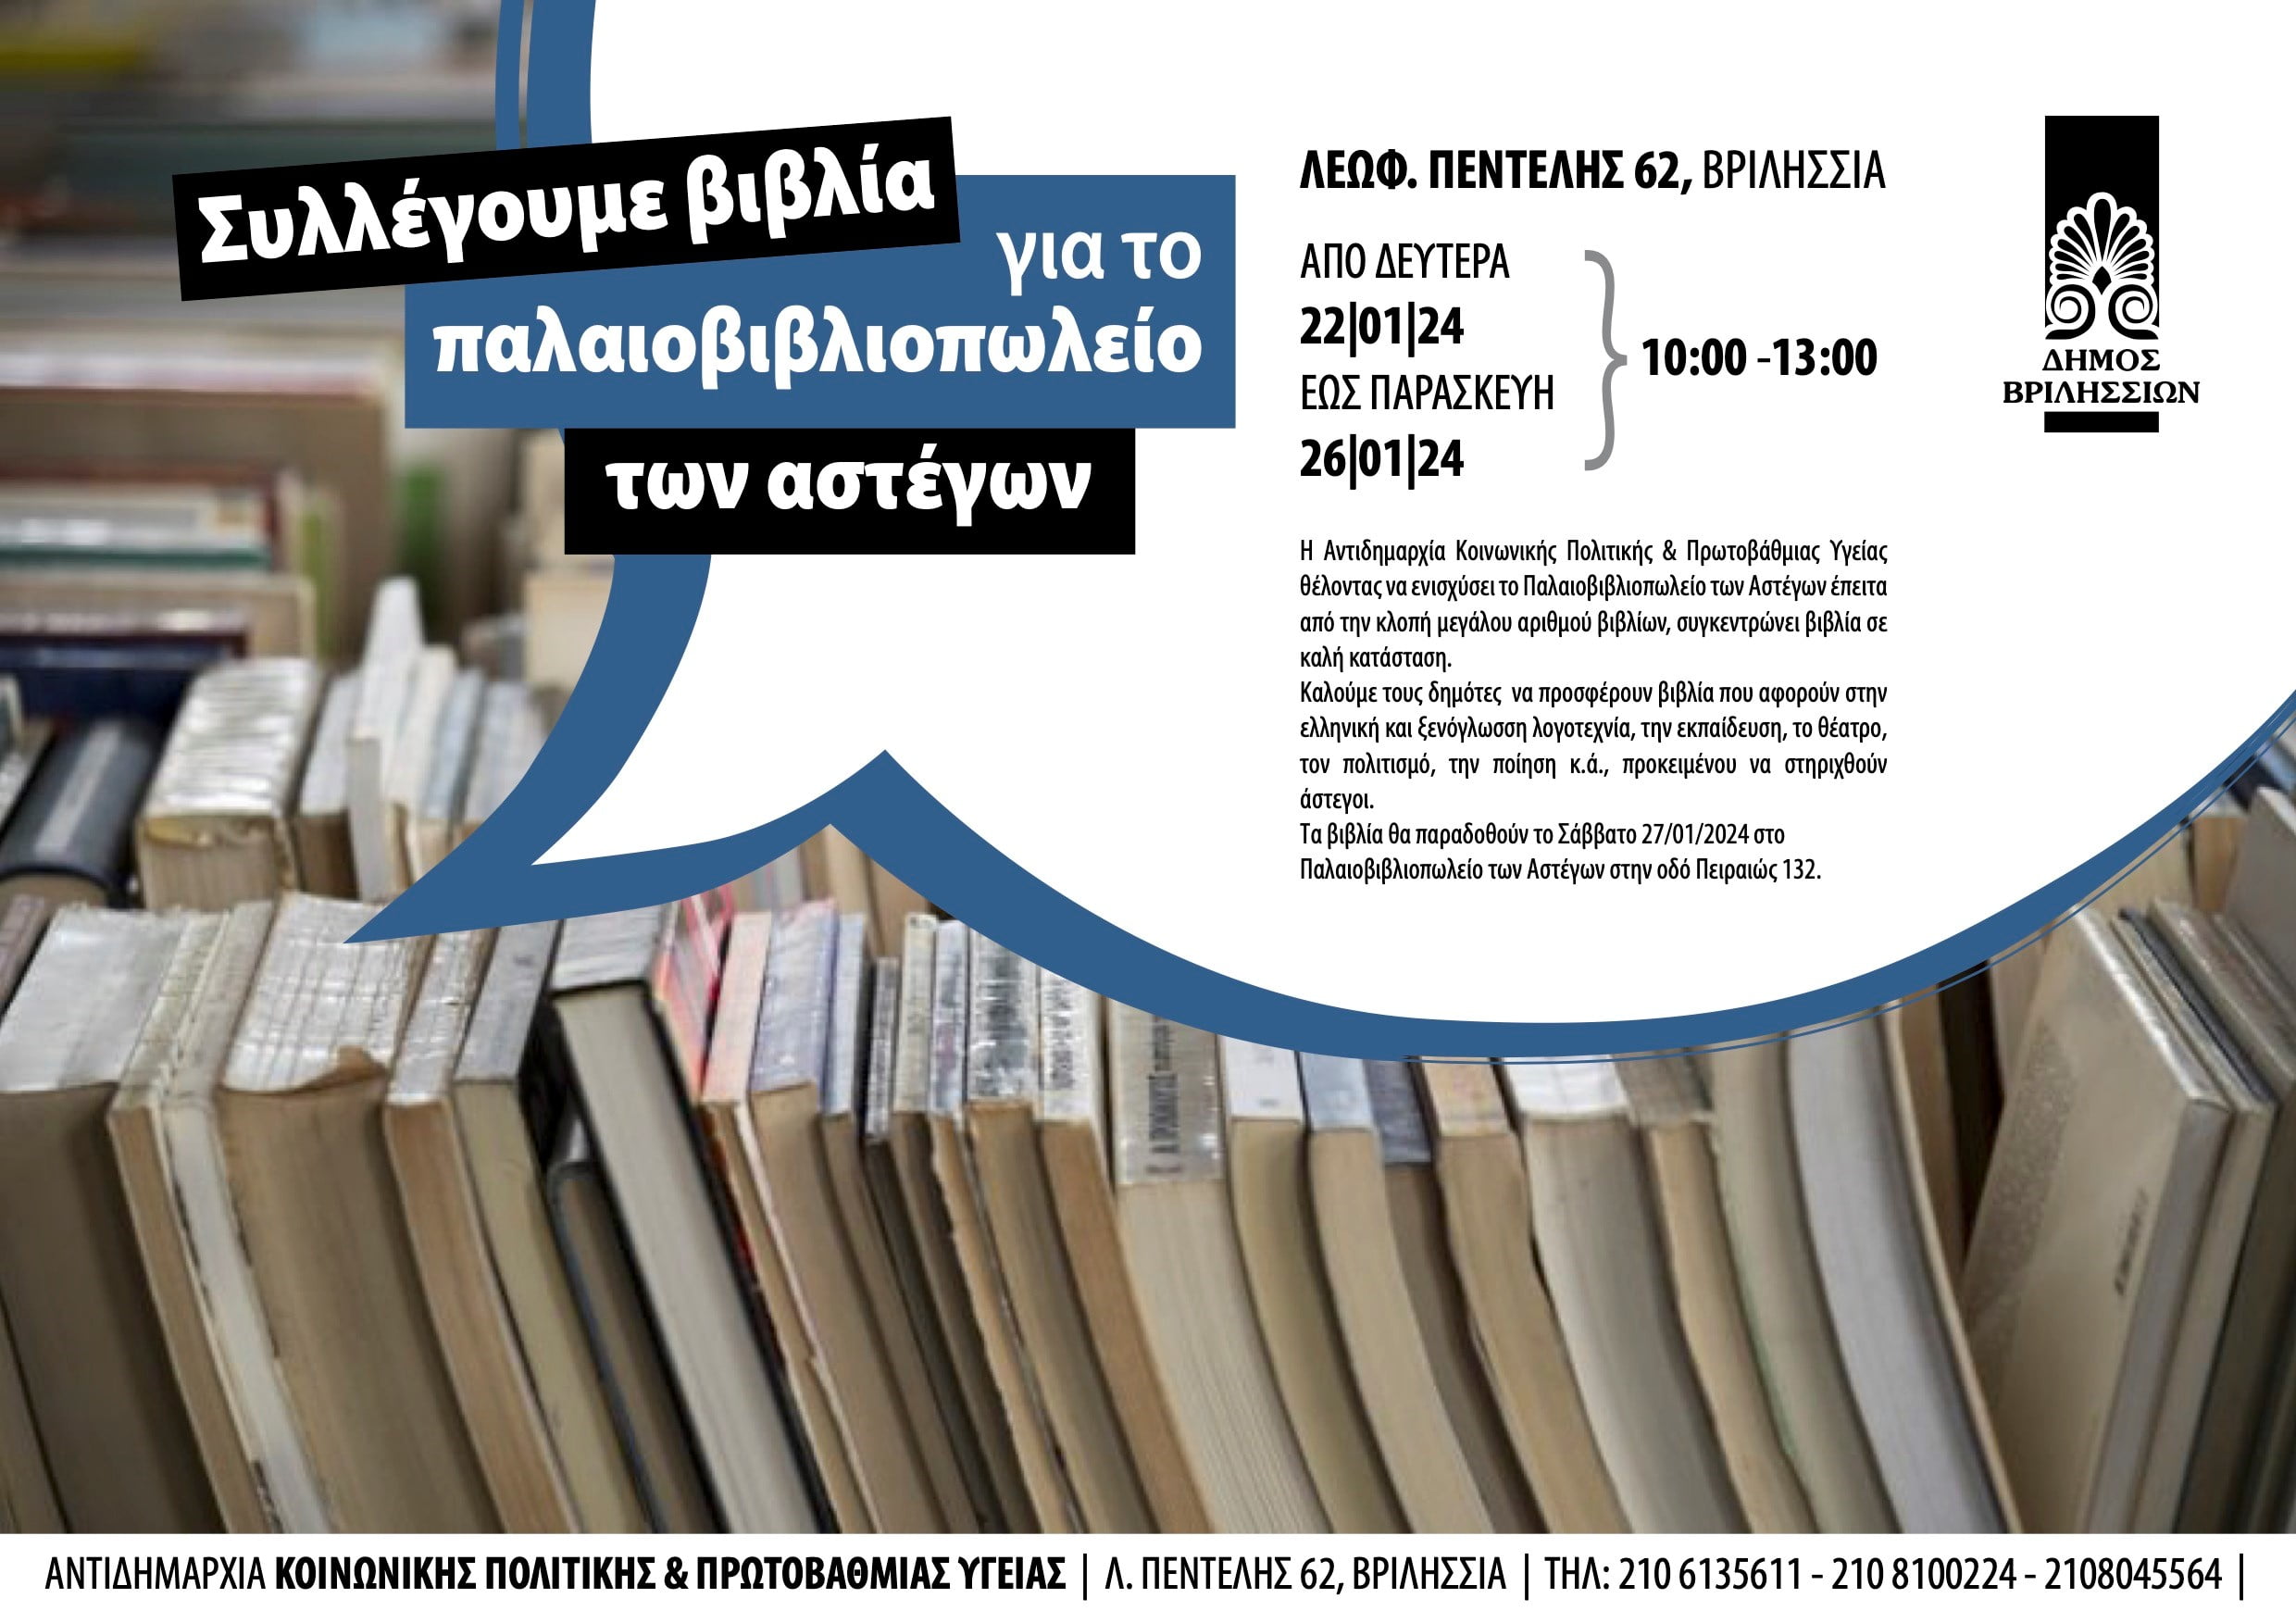 Συλλογή βιβλίων για το Παλαιοβιβλιοπωλείο των Αστέγων - Marousiotiko